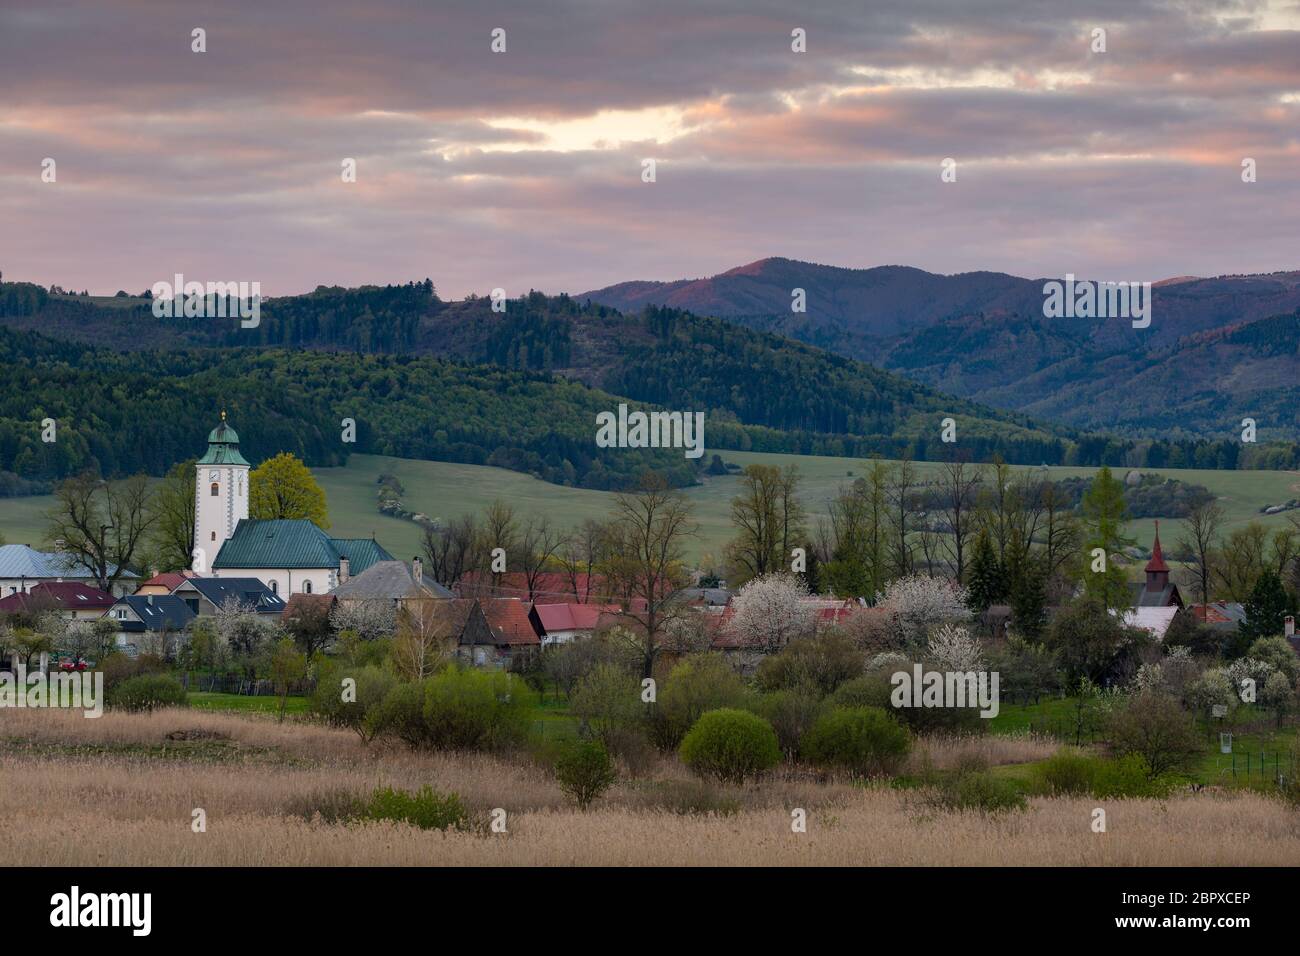 Villaggio di Klastor pod znievom villaggio nella regione Turiec, Slovacchia. Foto Stock